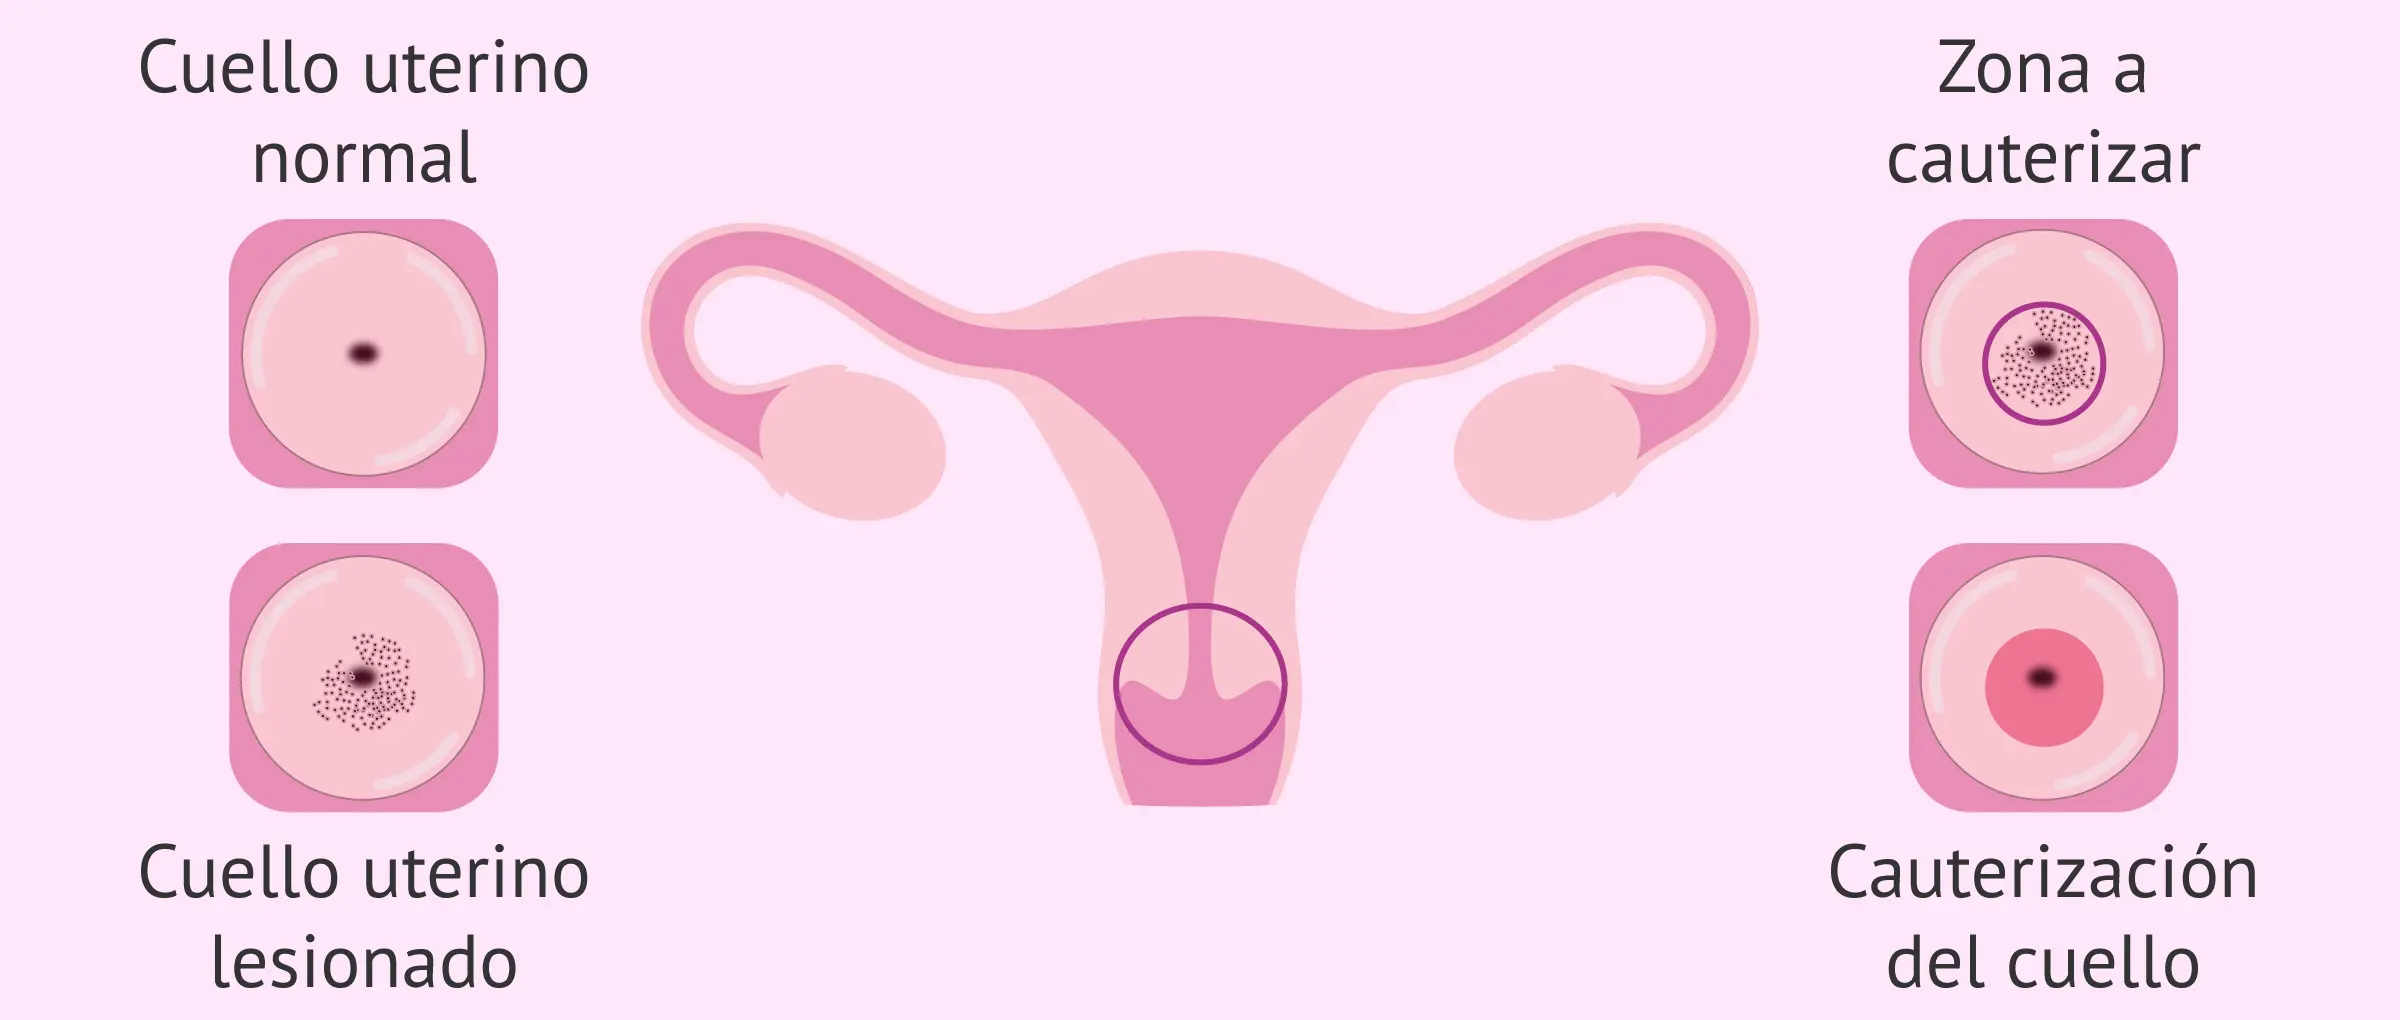 baterias en el cuello uterino - Cómo saber si tengo una infección en el útero